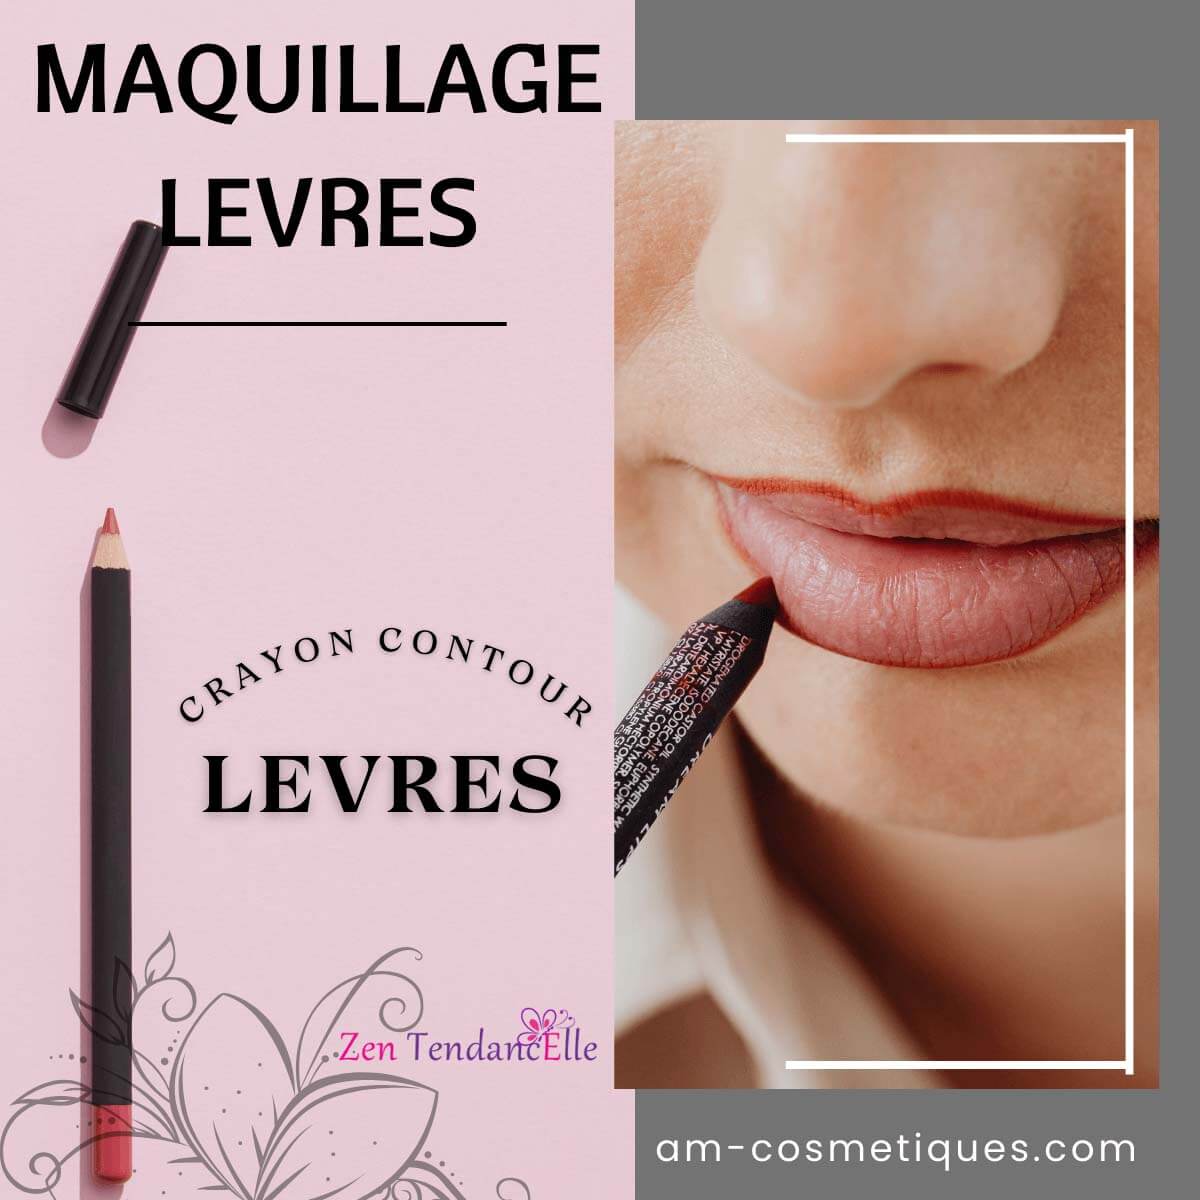 Crayon_contour_des_levres_maquillage_makeup_pas_cher_AM-Cosmetiques_Zen_TendancElle.jpg